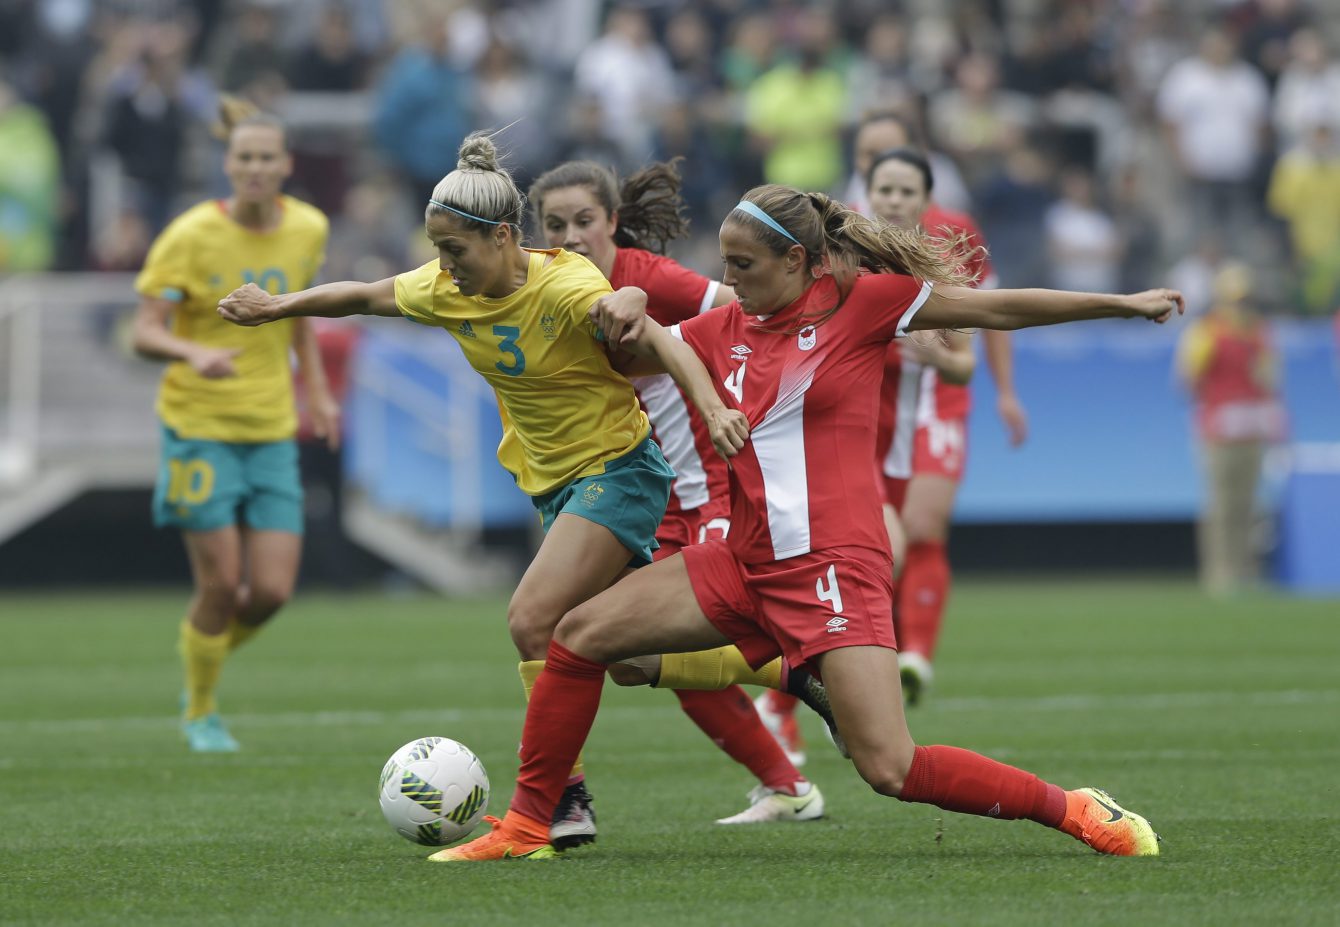 Shelina Zadorsky tente de prendre possession du ballon contre une joueuse australienne aux Jeux olympiques de 2016, le 3 août 2016 à São Paulo. (AP Photo/Nelson Antoine)